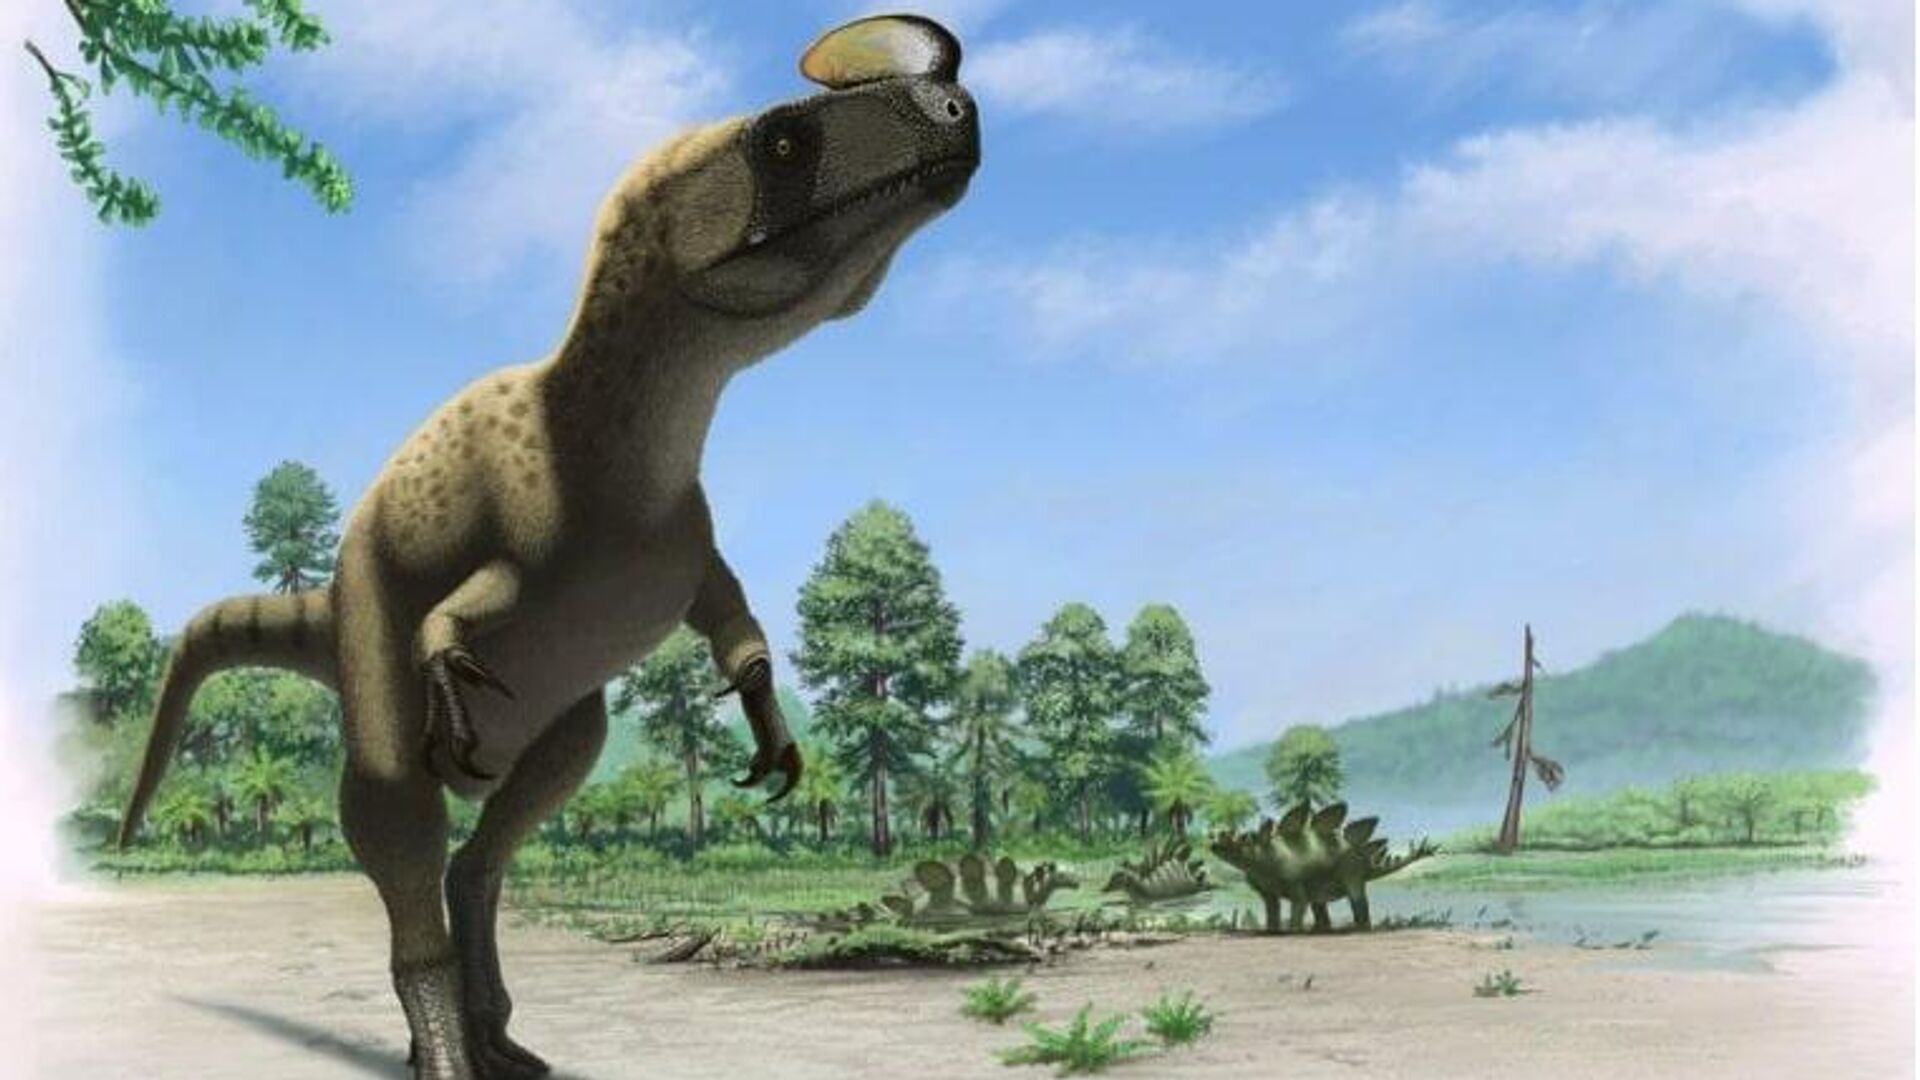 Տոմսկի գիտնականները կուսումնասիրեն դինոզավրերի միգրացիոն ուղիները՝ օգտագործելով նրանց ստամոքսի քարերը